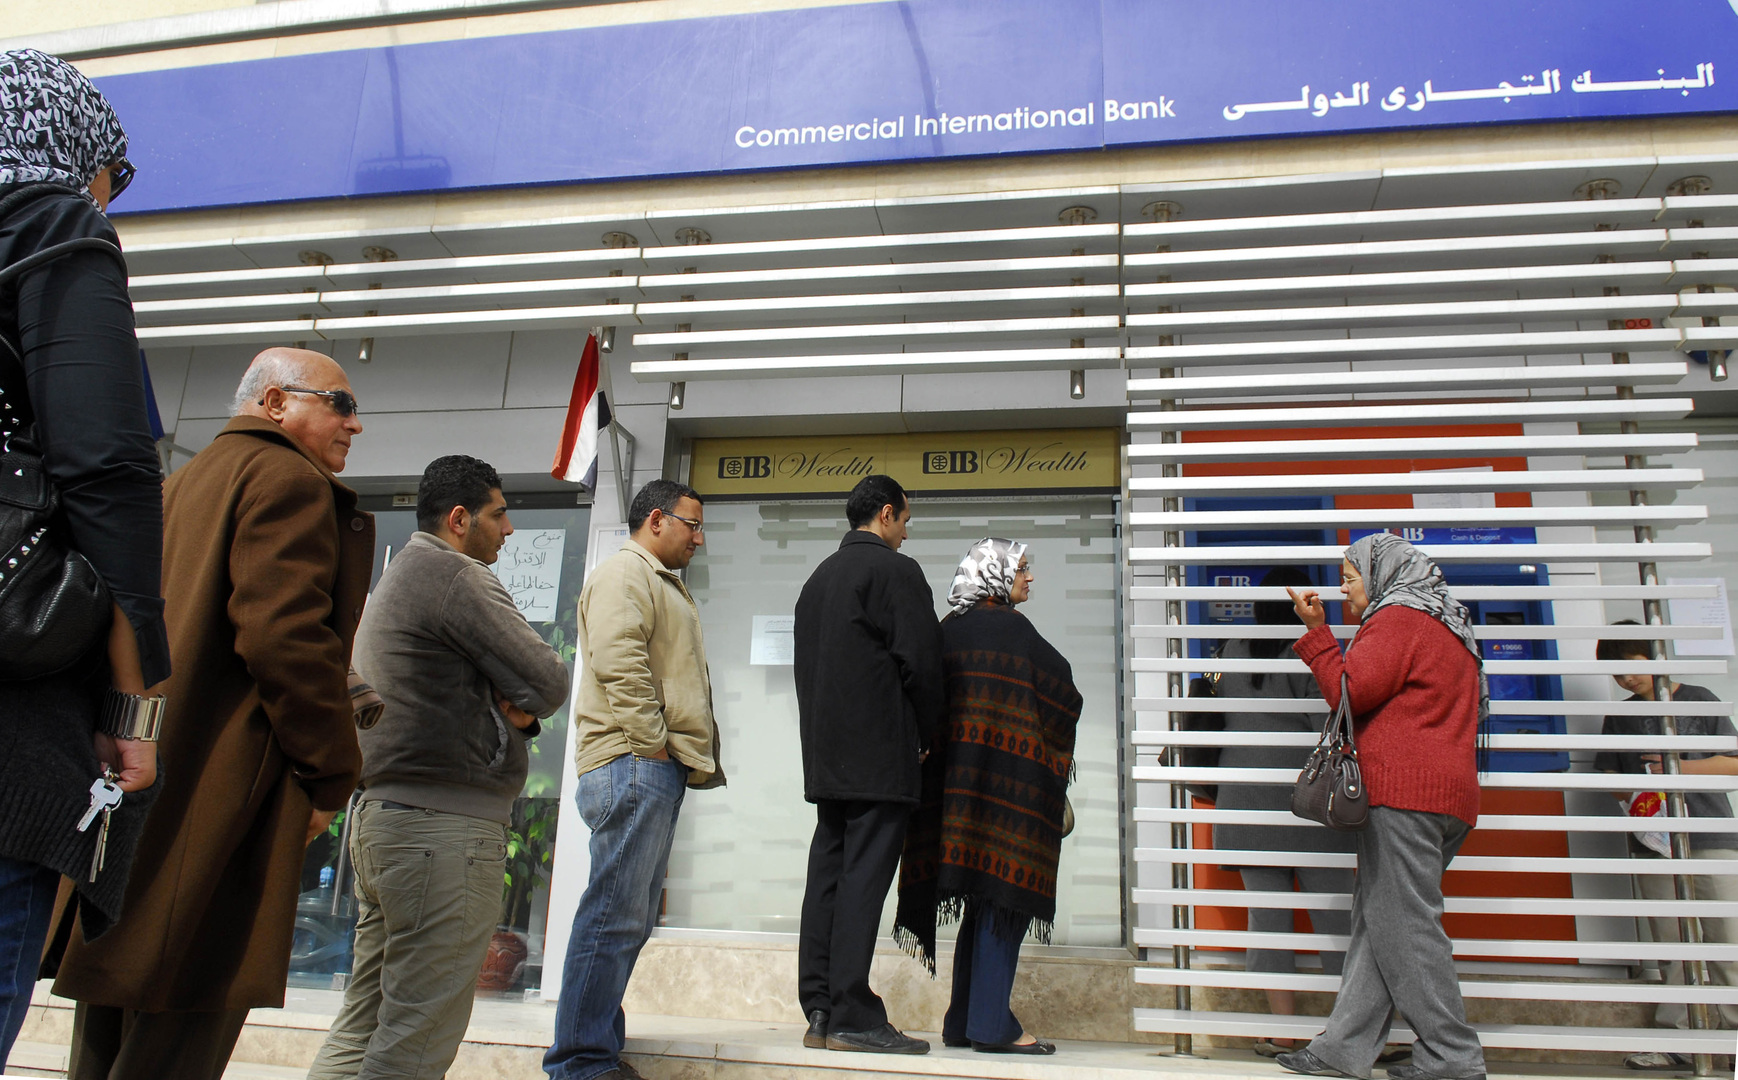 المالية المصرية تعلق على مسألة فرض عمولة على السحب من ماكينة الصراف الآلي